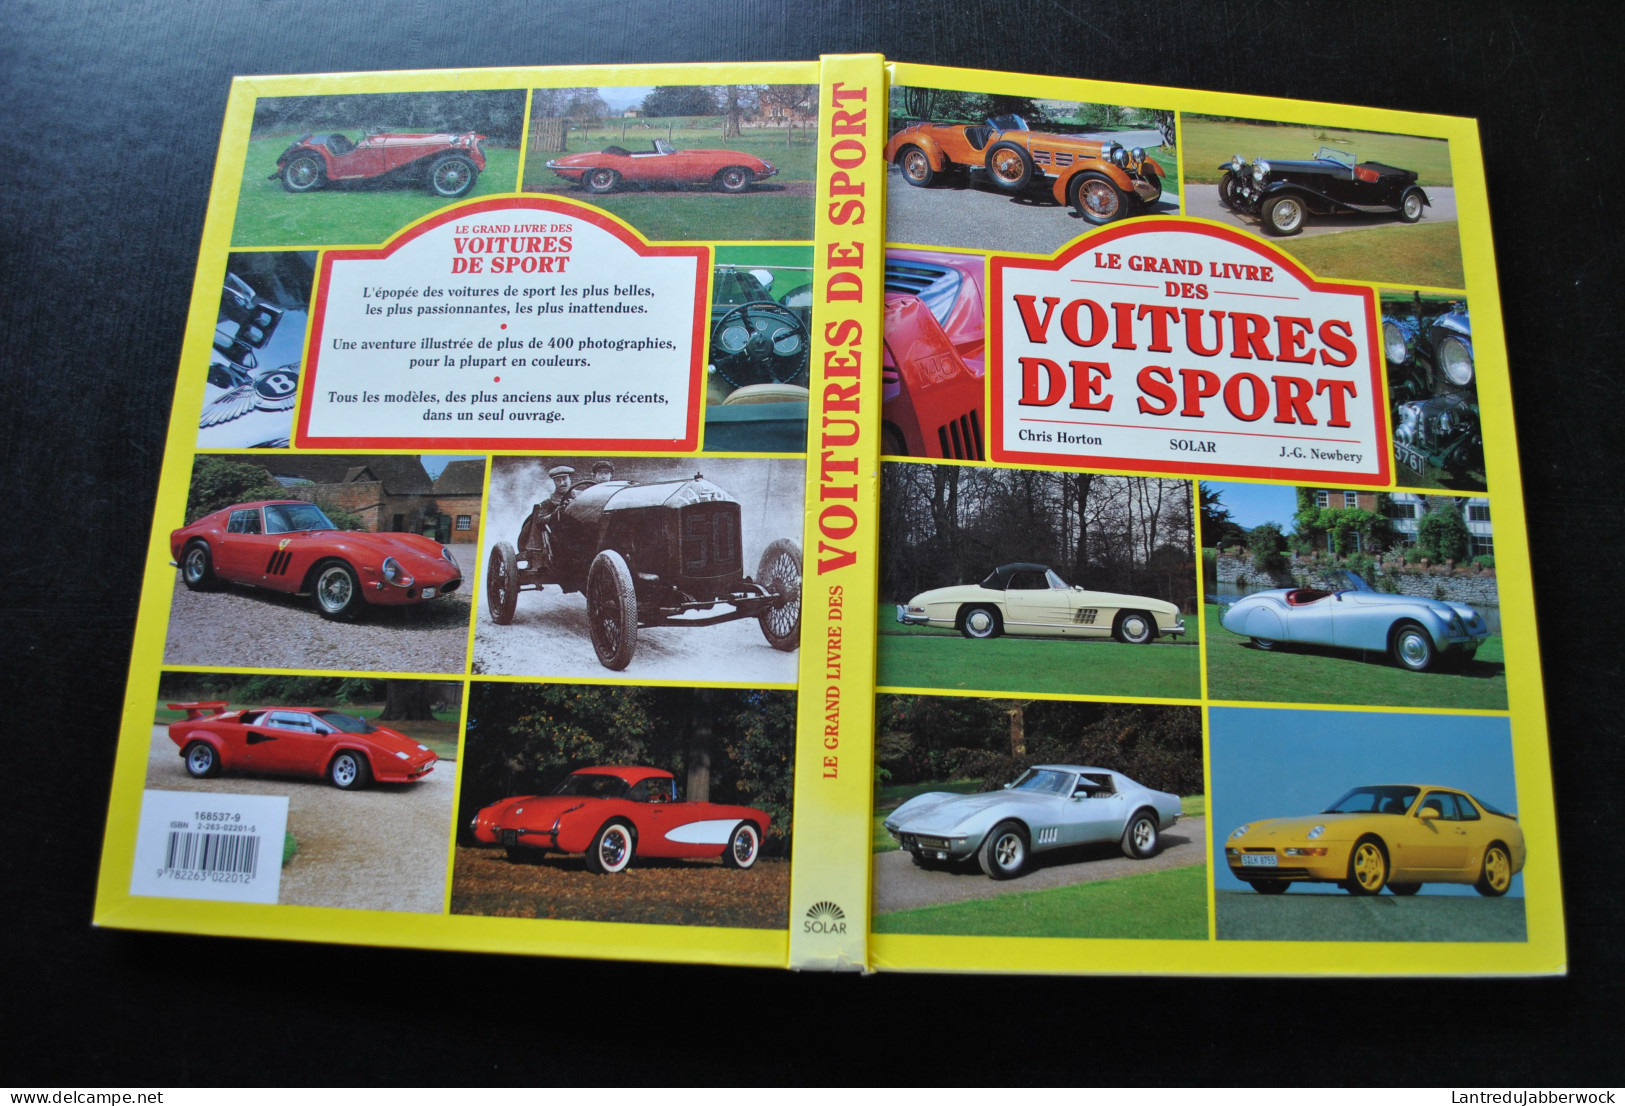 HORTON NEWBERY LE GRAND LIVRE DES VOITURES DE SPORT Duesenberg Triumph Alfa BMW Jaguar Ford GT Ferrari... - Auto